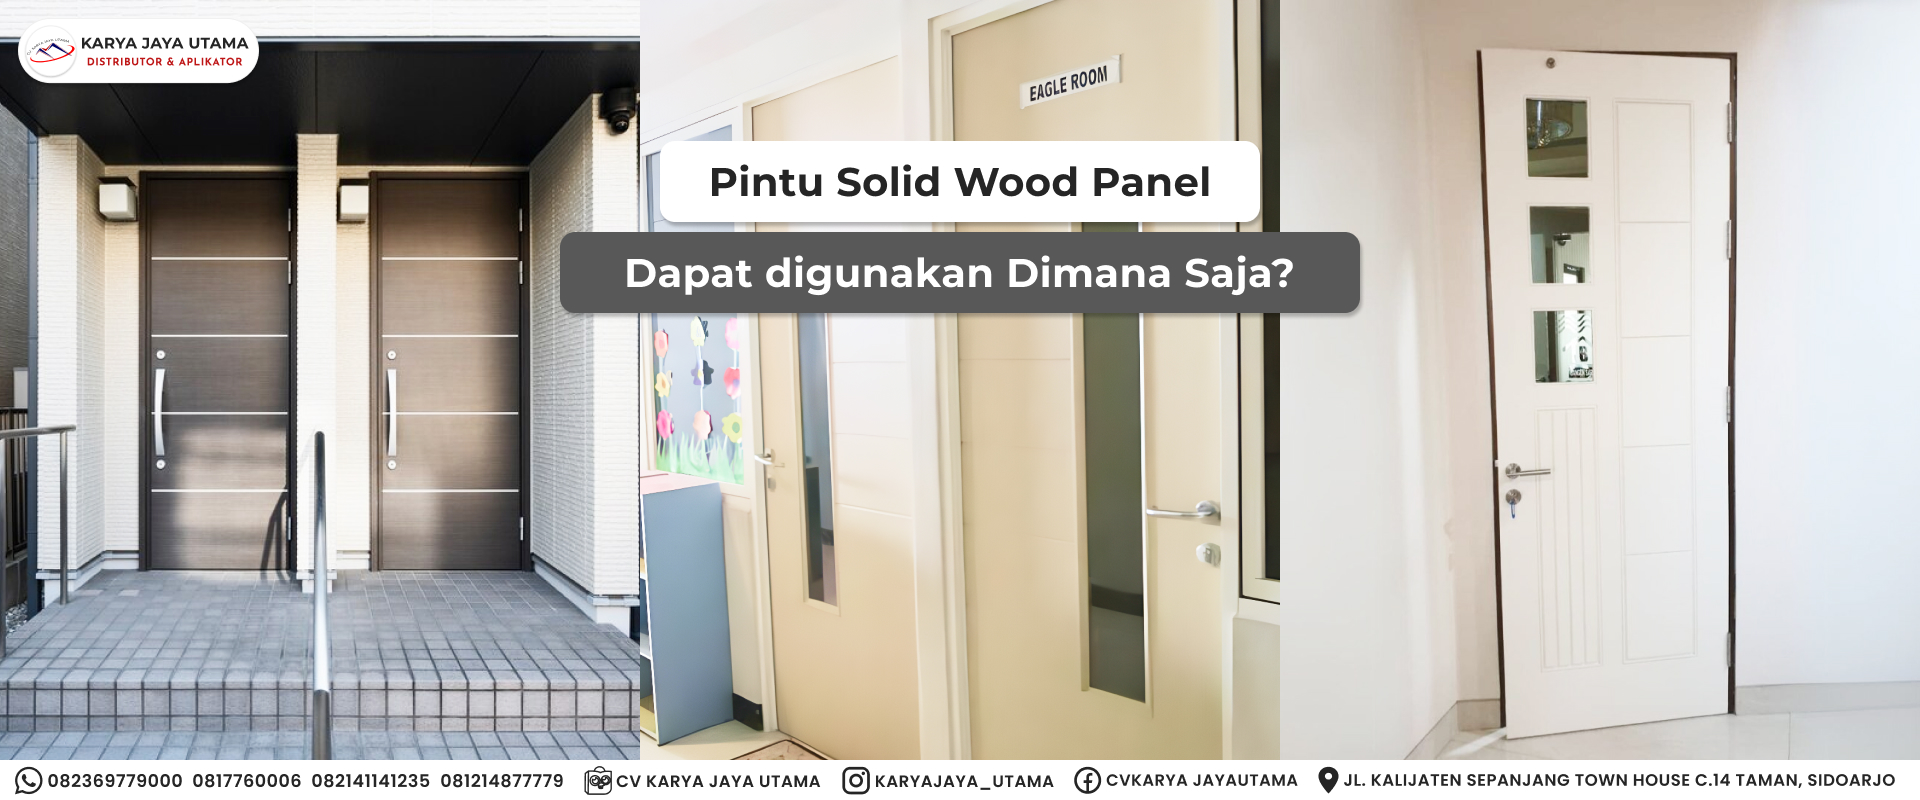 Pintu Solid Wood Panel Dapat Digunakan Dimana Saja?